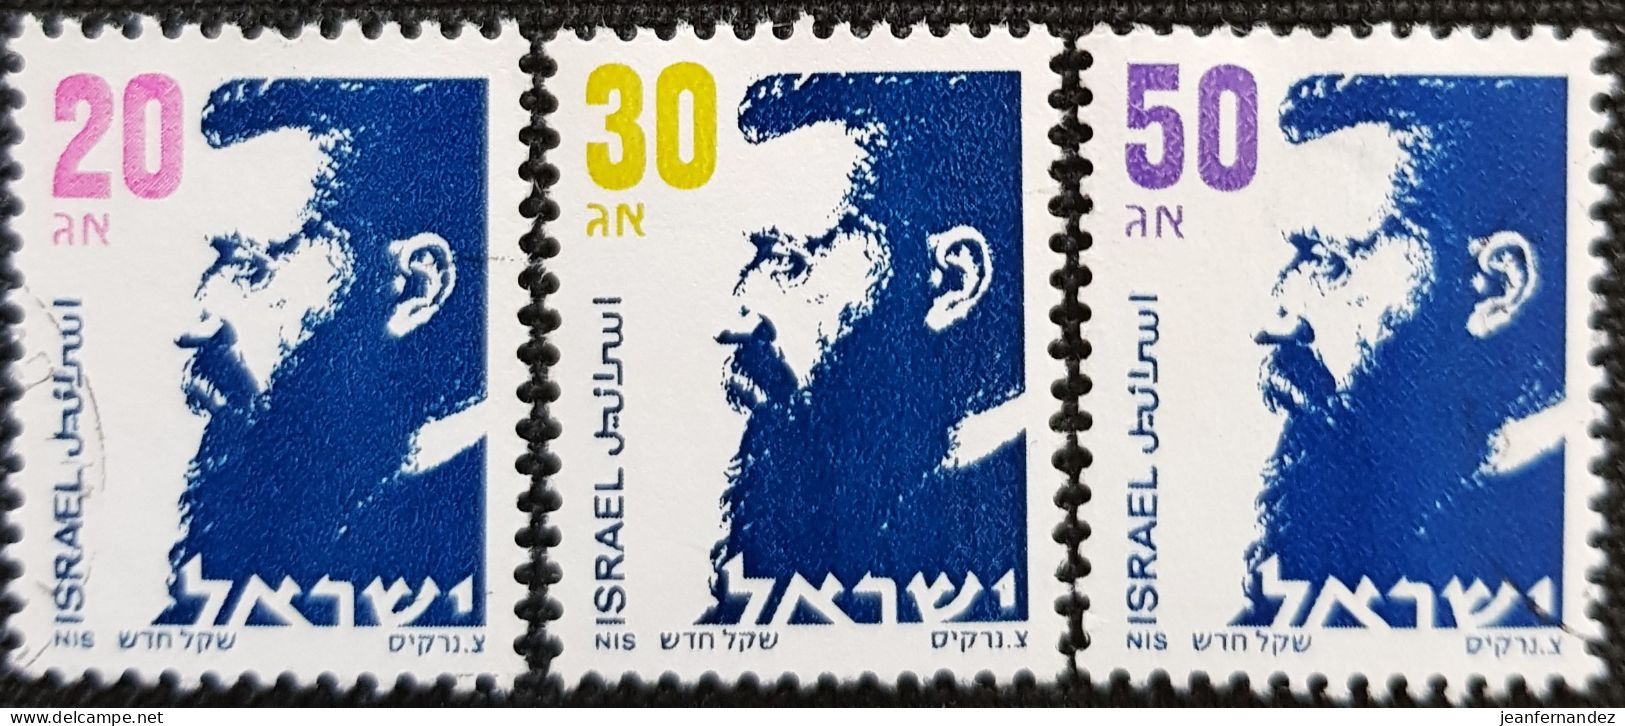 Israel 1986 Definitive - Dr Theodor Herzl  Stampworld N° 1020 à 1022 - Usados (sin Tab)